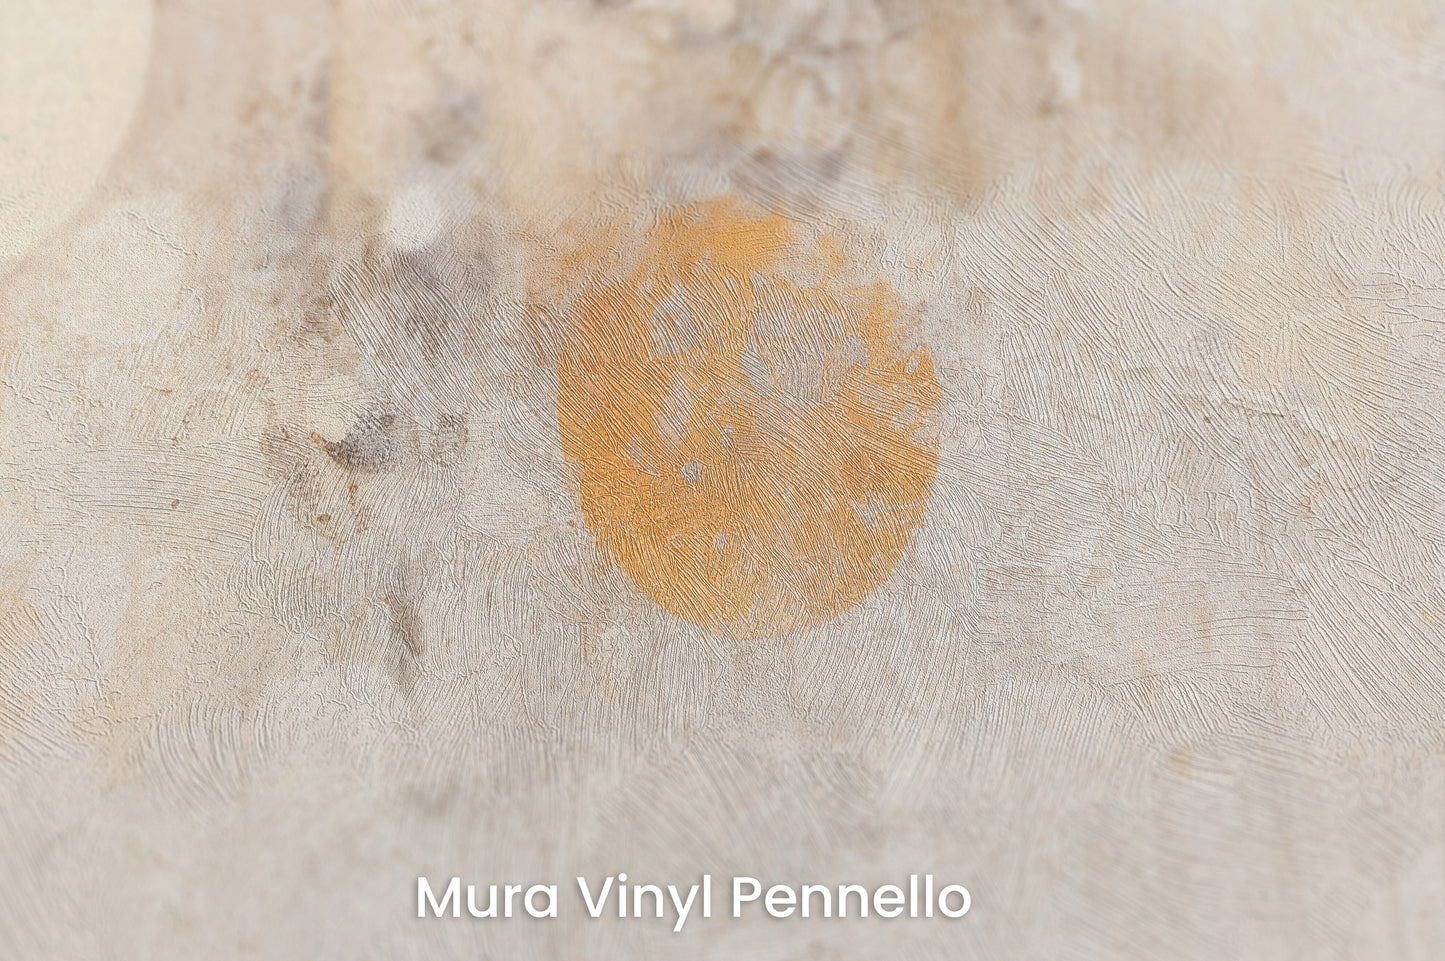 Zbliżenie na artystyczną fototapetę o nazwie ORBITAL WHISPER CANVAS na podłożu Mura Vinyl Pennello - faktura pociągnięć pędzla malarskiego.